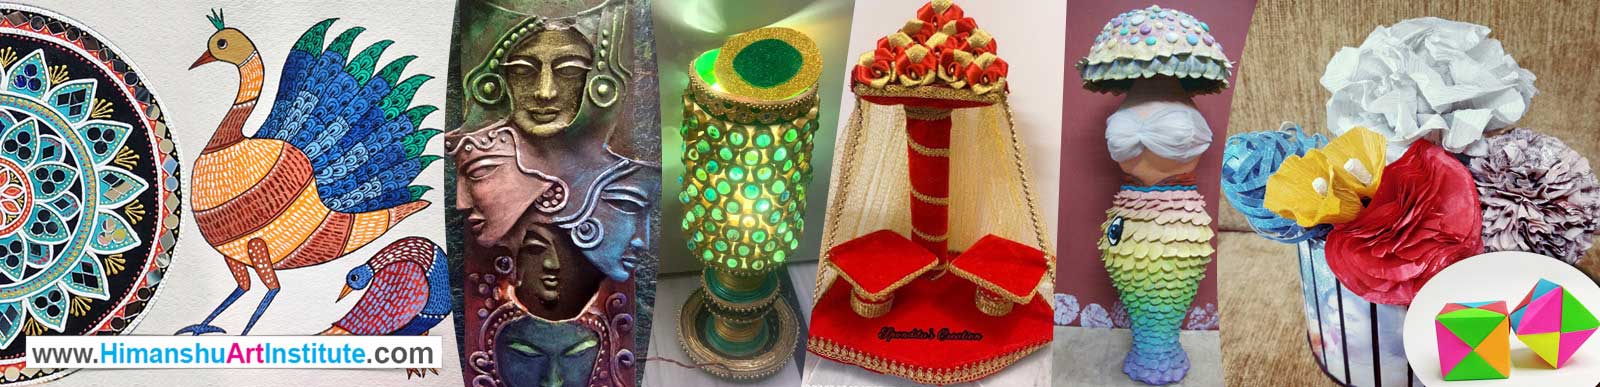 Best Institute of Art & Craft in Delhi, Online Art & Craft Classes, Diploma Course in Art & Crafts, Career in Art & Crafts, Delhi India